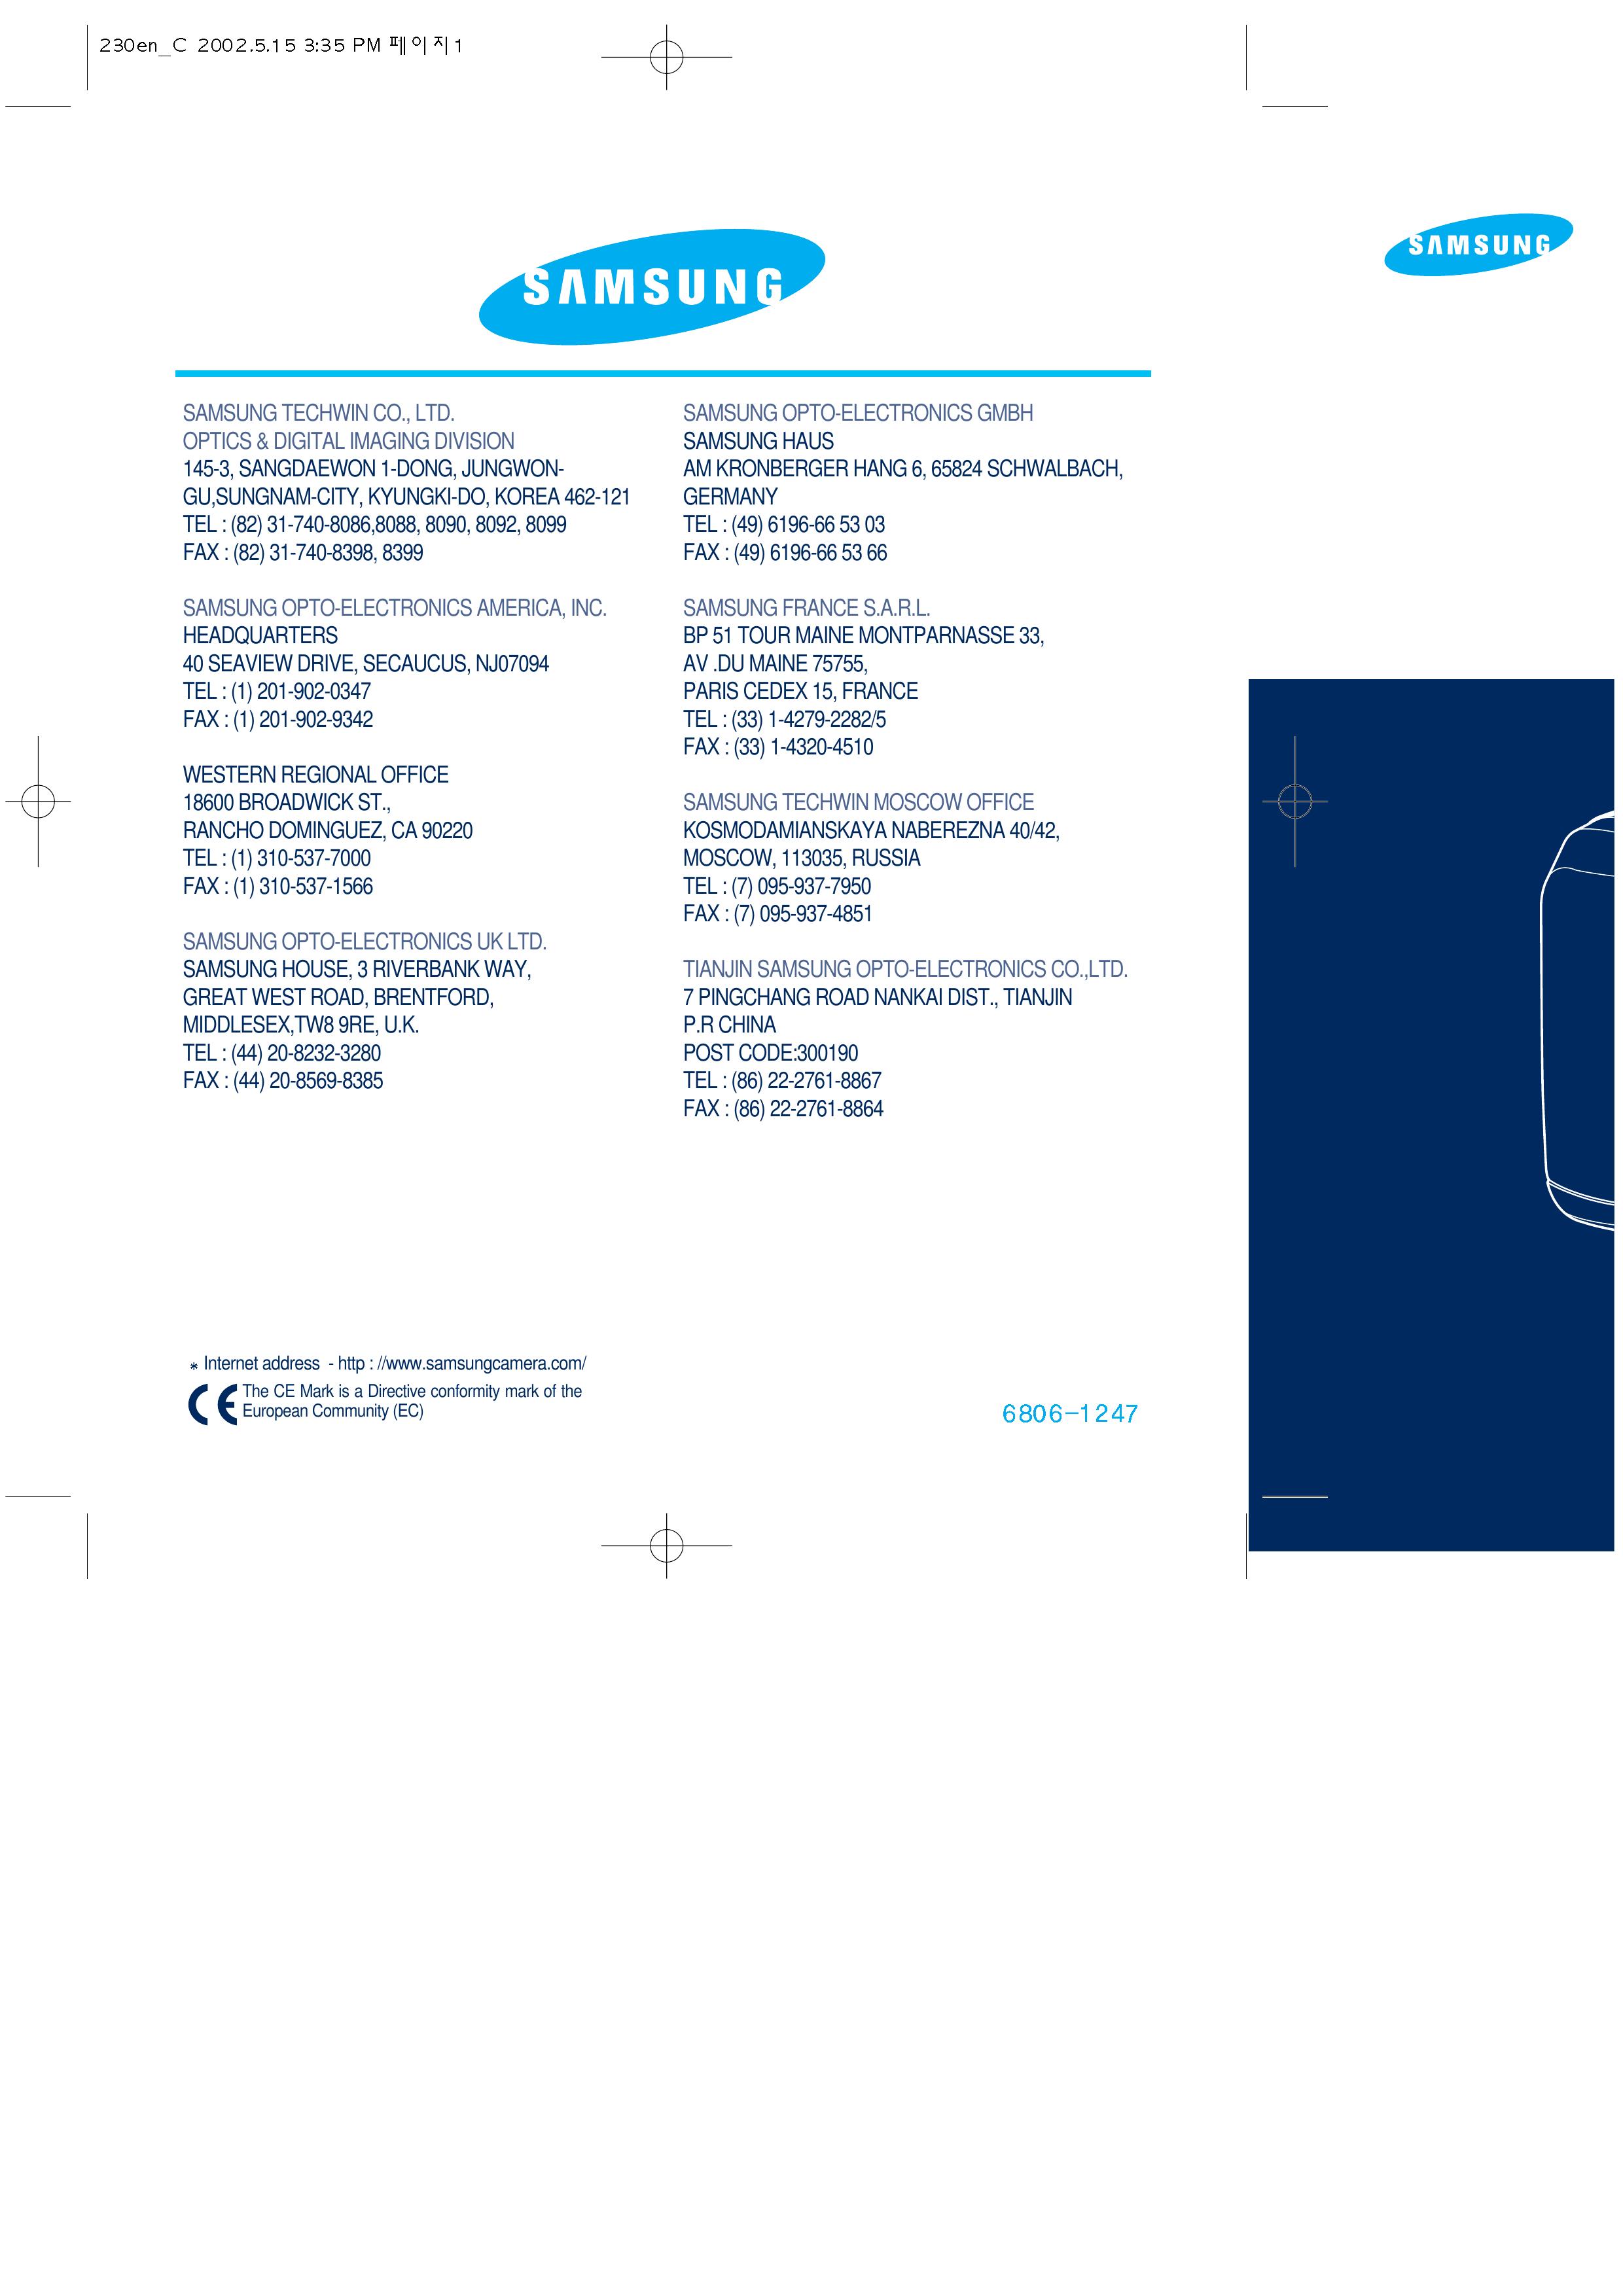 Samsung 6806-1247 Digital Camera User Manual